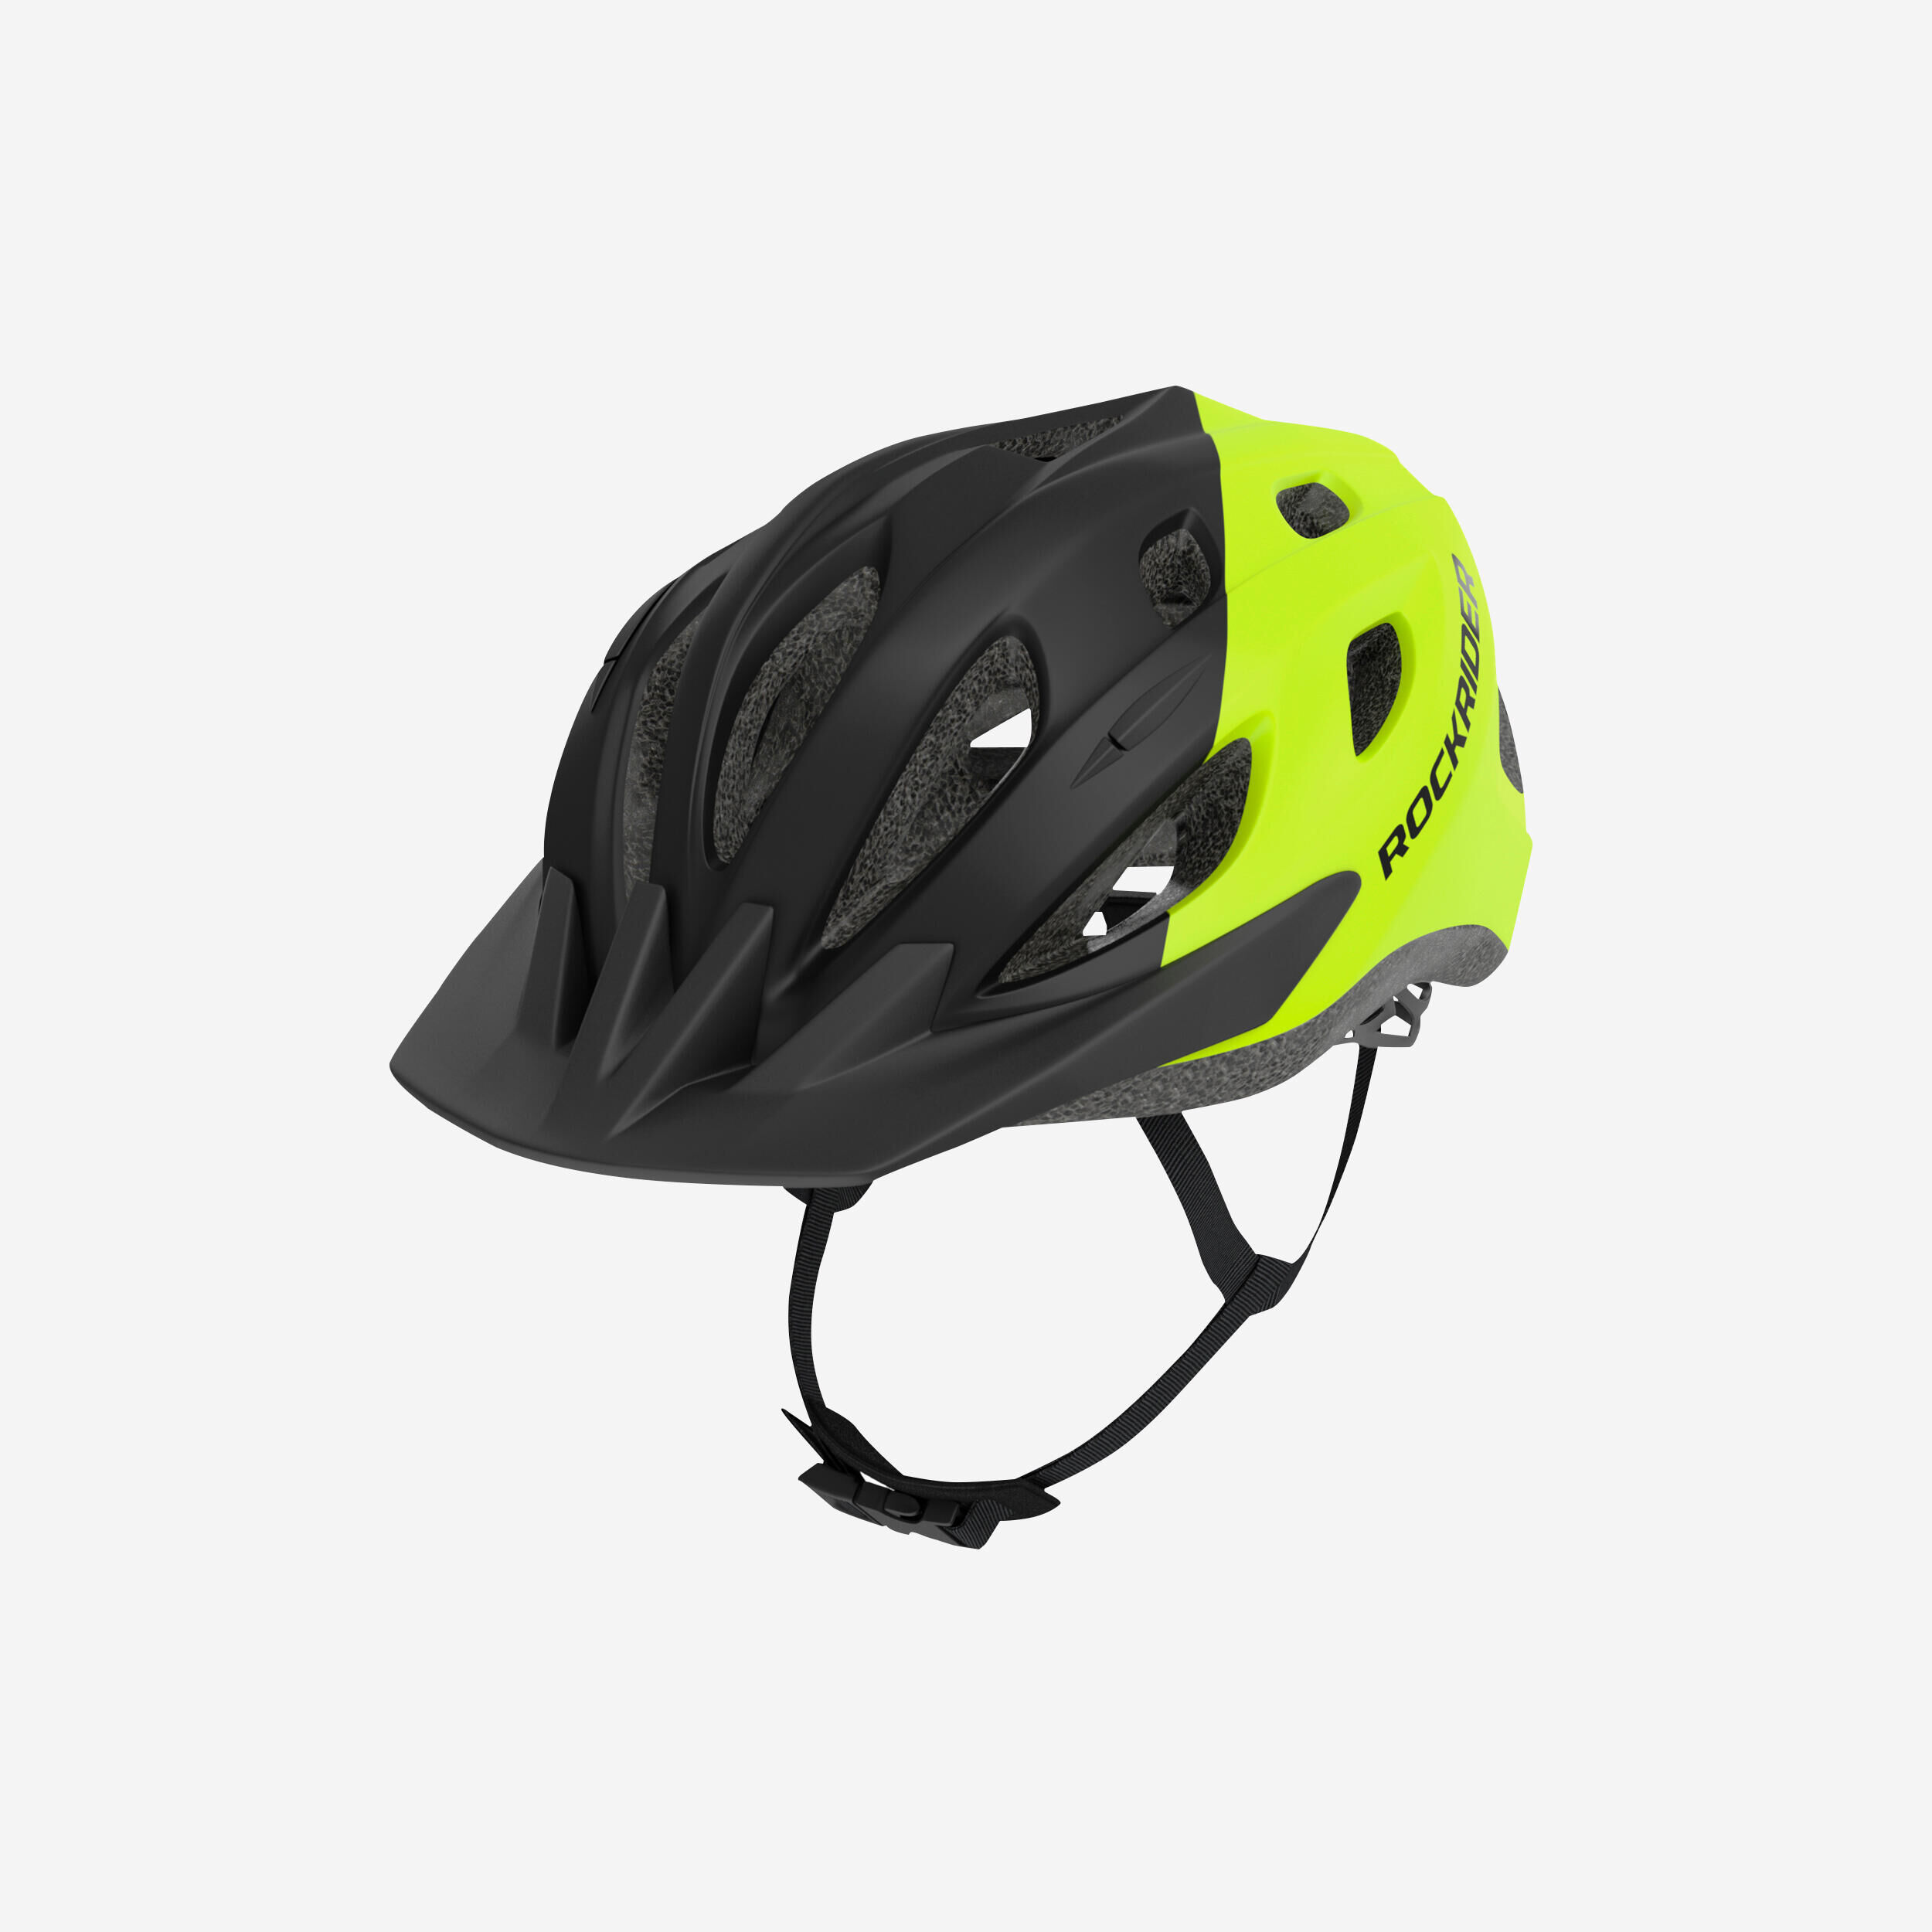 BTWIN 500 Kids' Mountain Bike Helmet 4-15 - Red